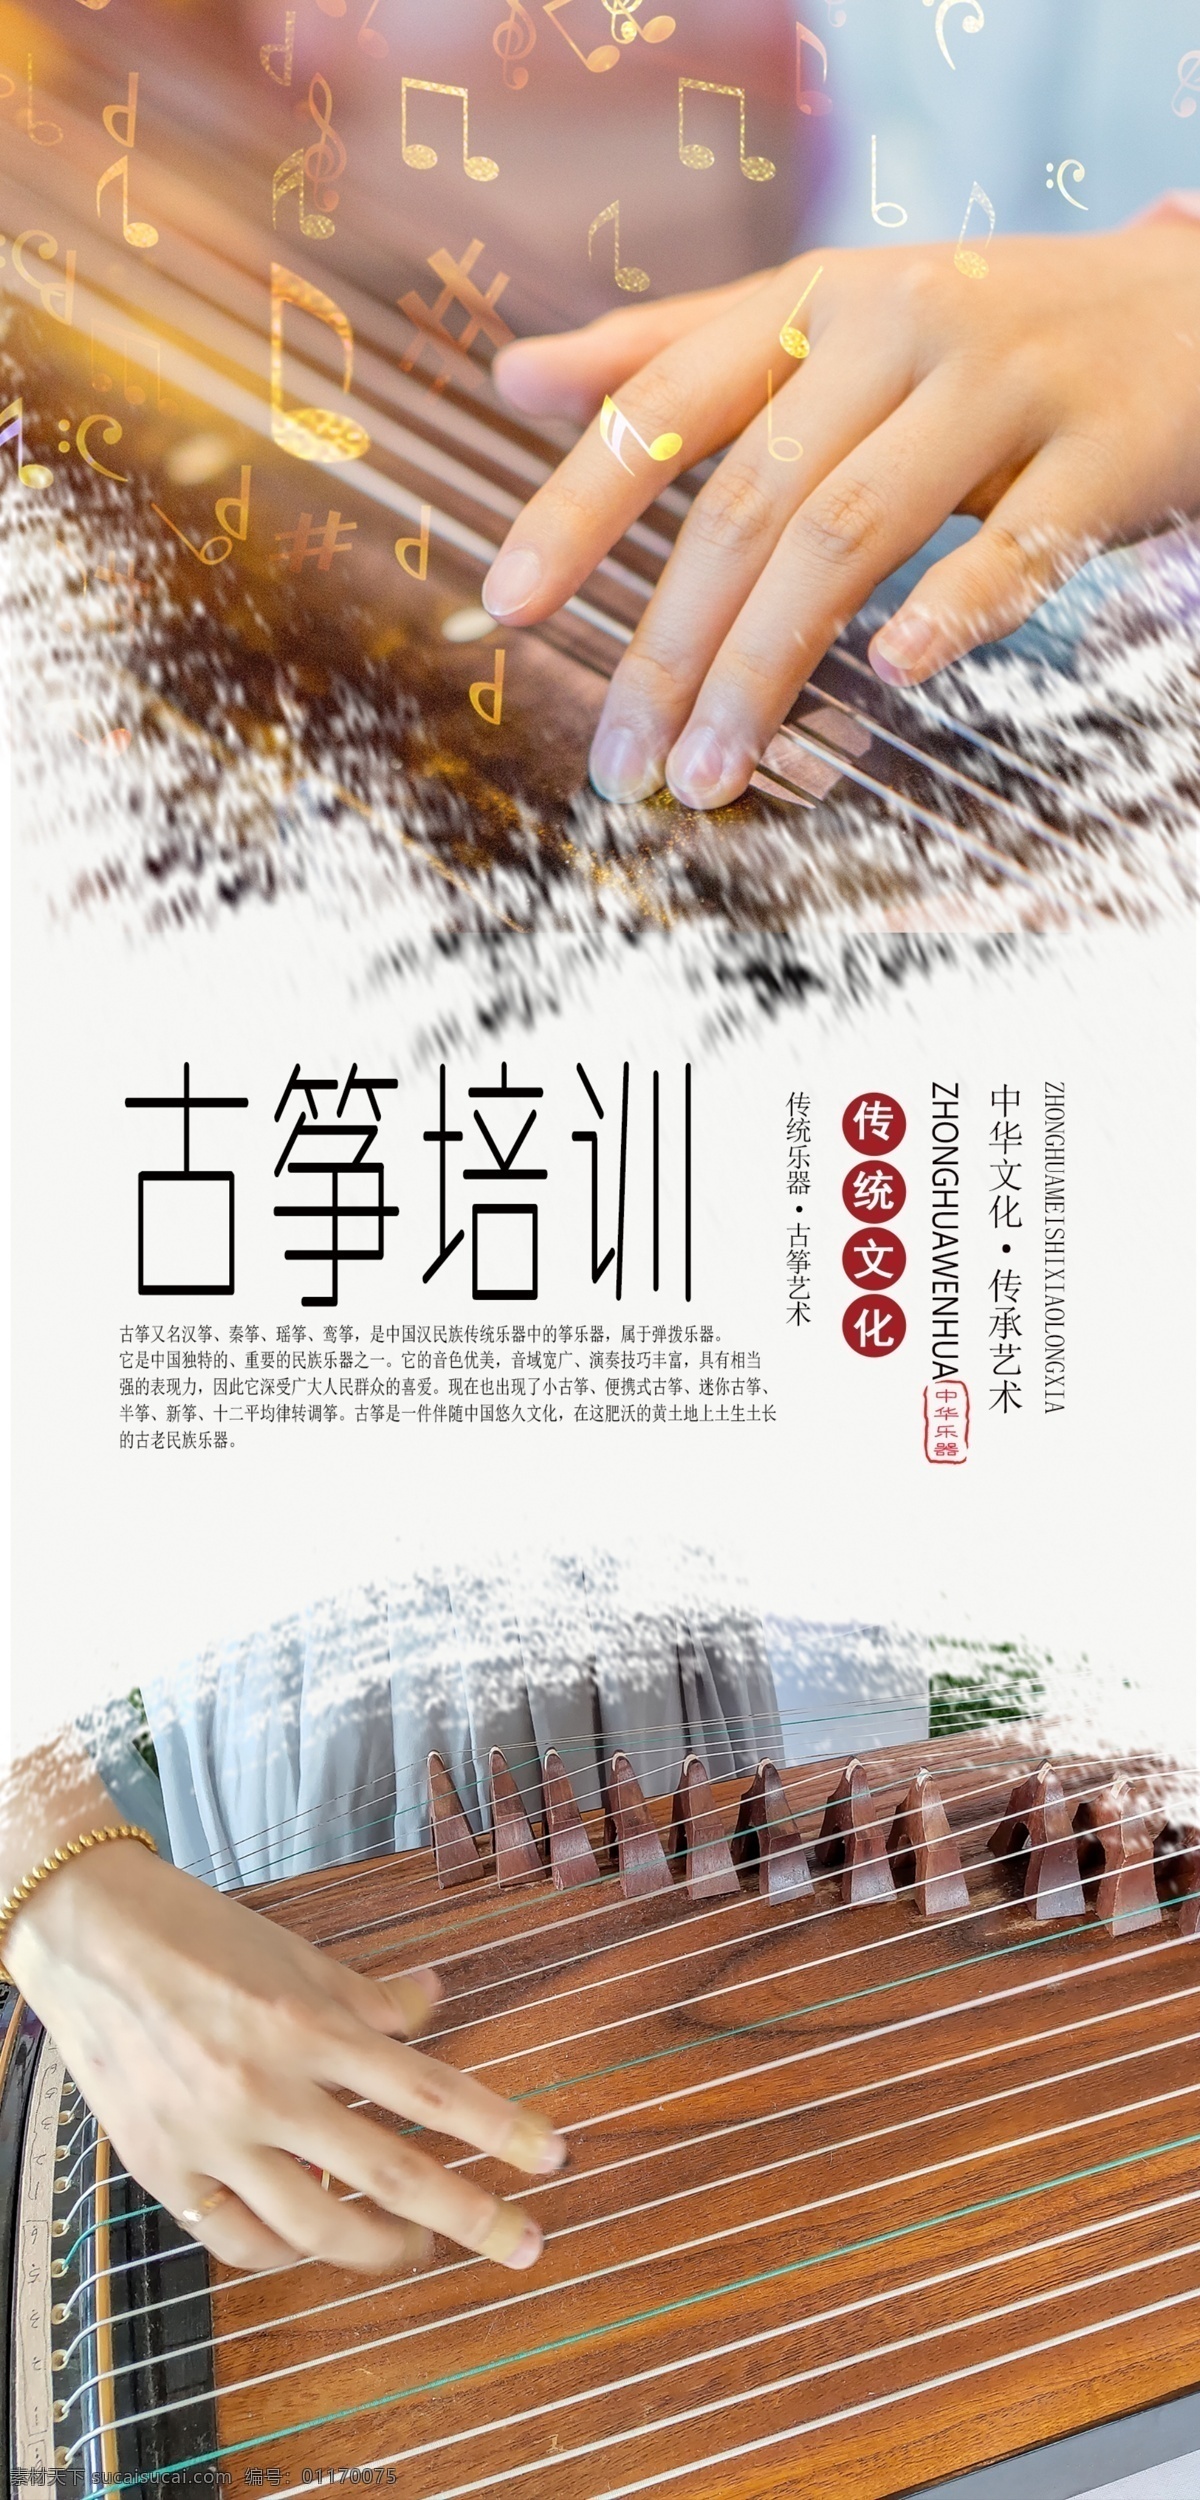 古筝培训海报 古筝 乐器培训 古筝艺术 古筝教学 中国乐曲